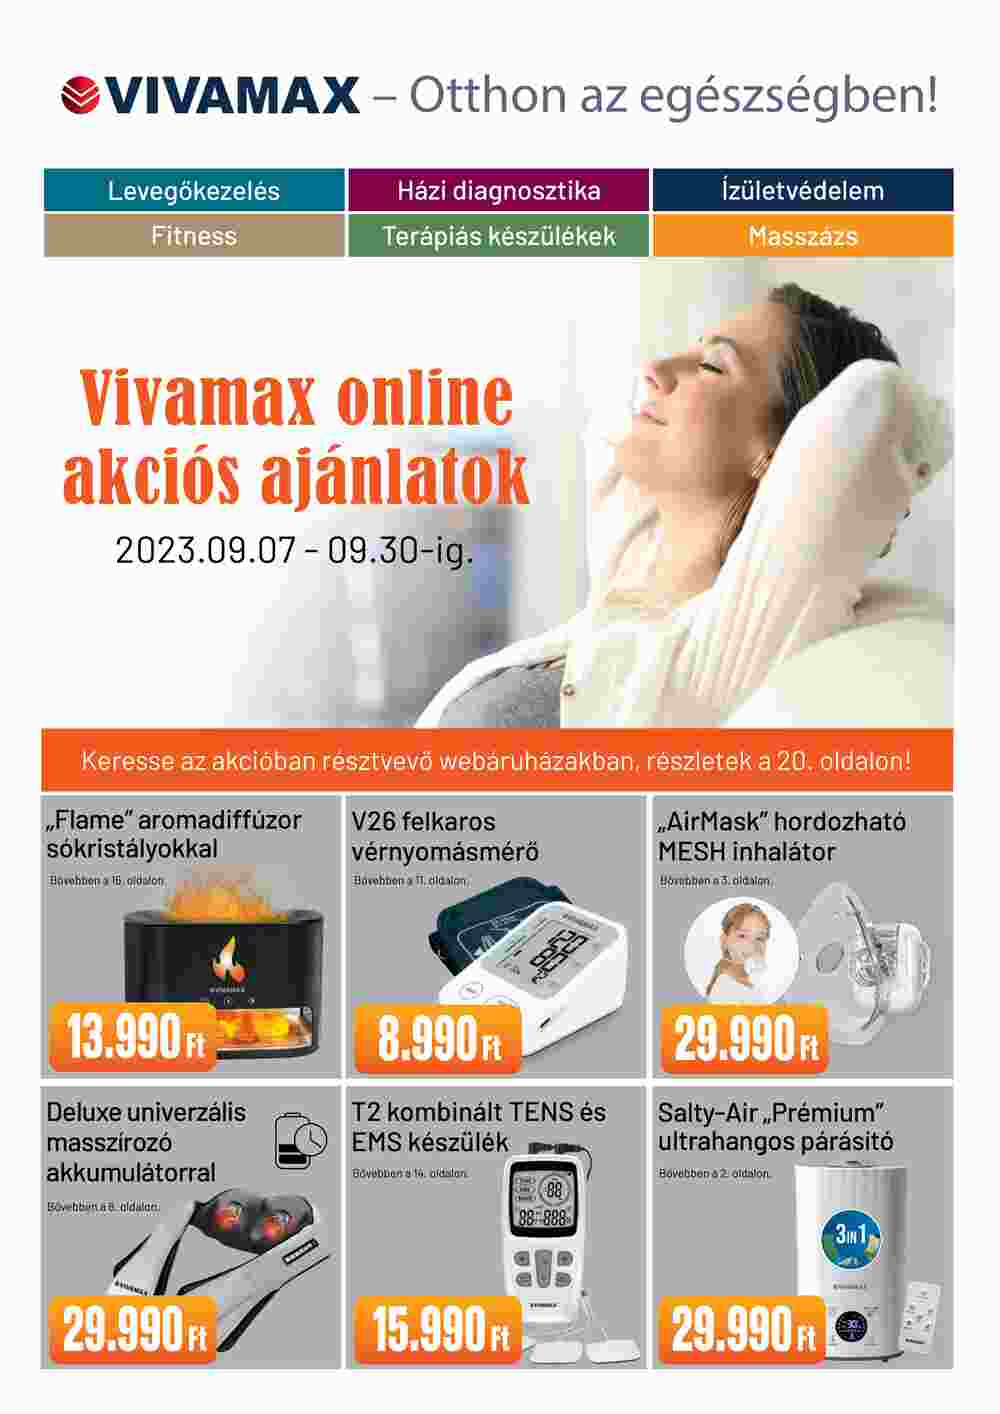 Vivamax akciós újság 2023.09.07-től - 1. oldal.